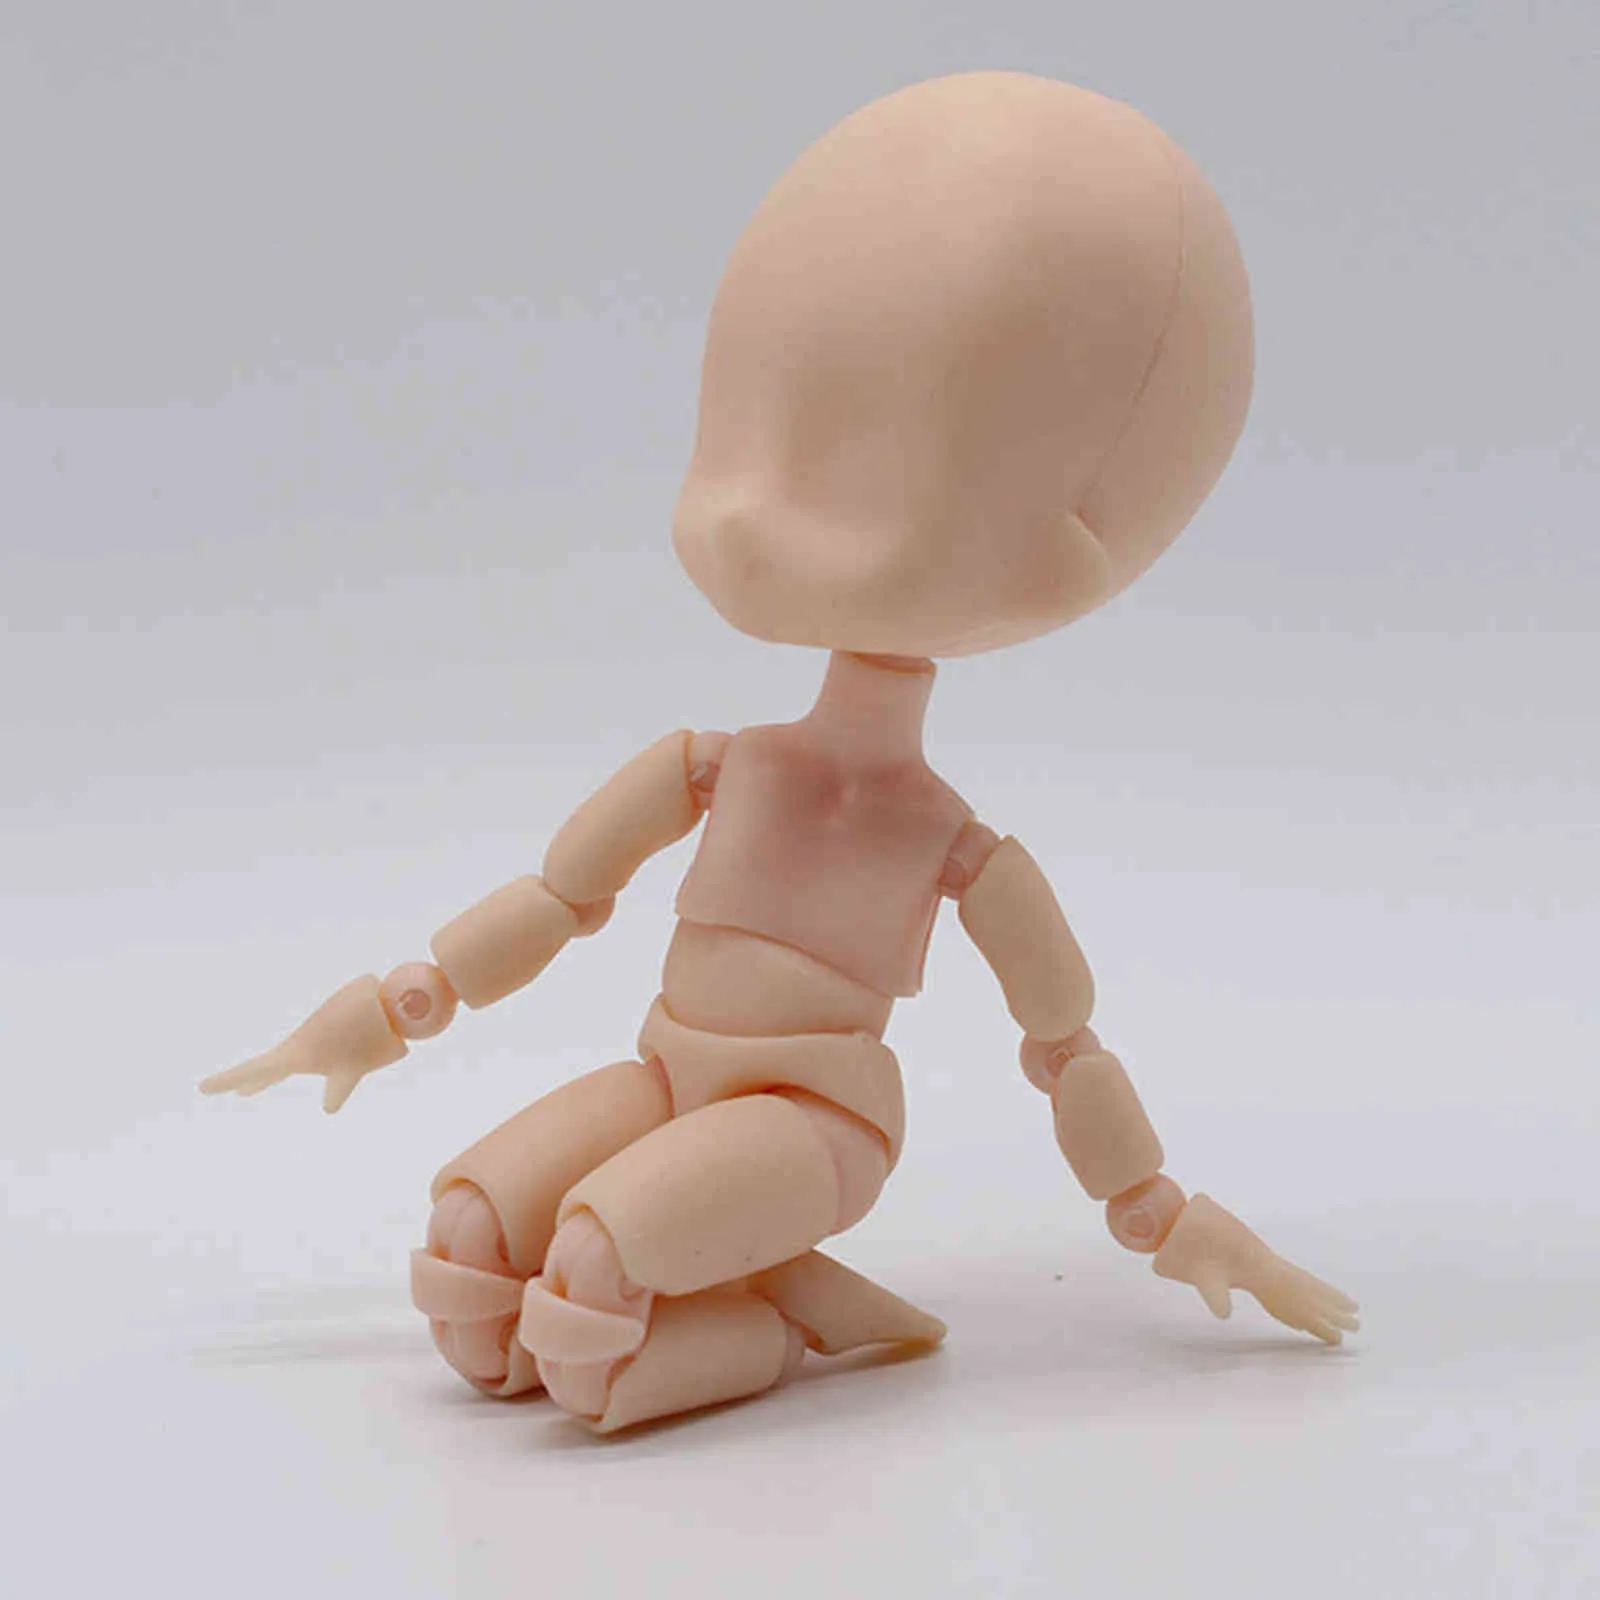 MOVIBLE BR BJD Poupée Joint Body avec Stand Diy Prop 15cm 1/12 Nu Bébé Poupées Jouets Mini Baby Action Figure Toys H1108